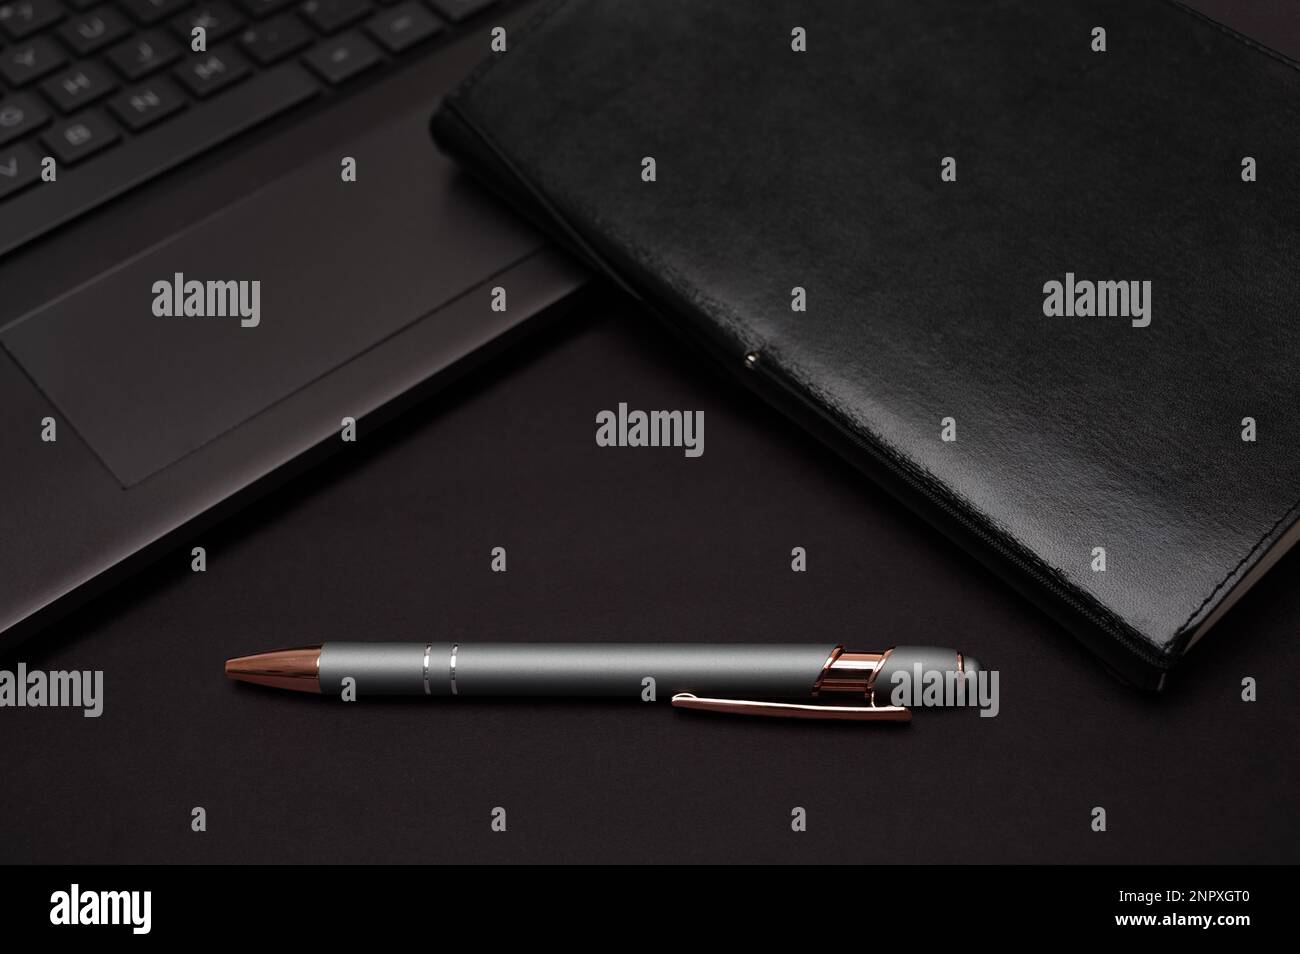 Ein organisiertes schwarzes Notebook, Laptop und Stift mit dem Gefühl eines Heimbüros oder kreativen Schreibens auf schwarzem Hintergrund. Stockfoto